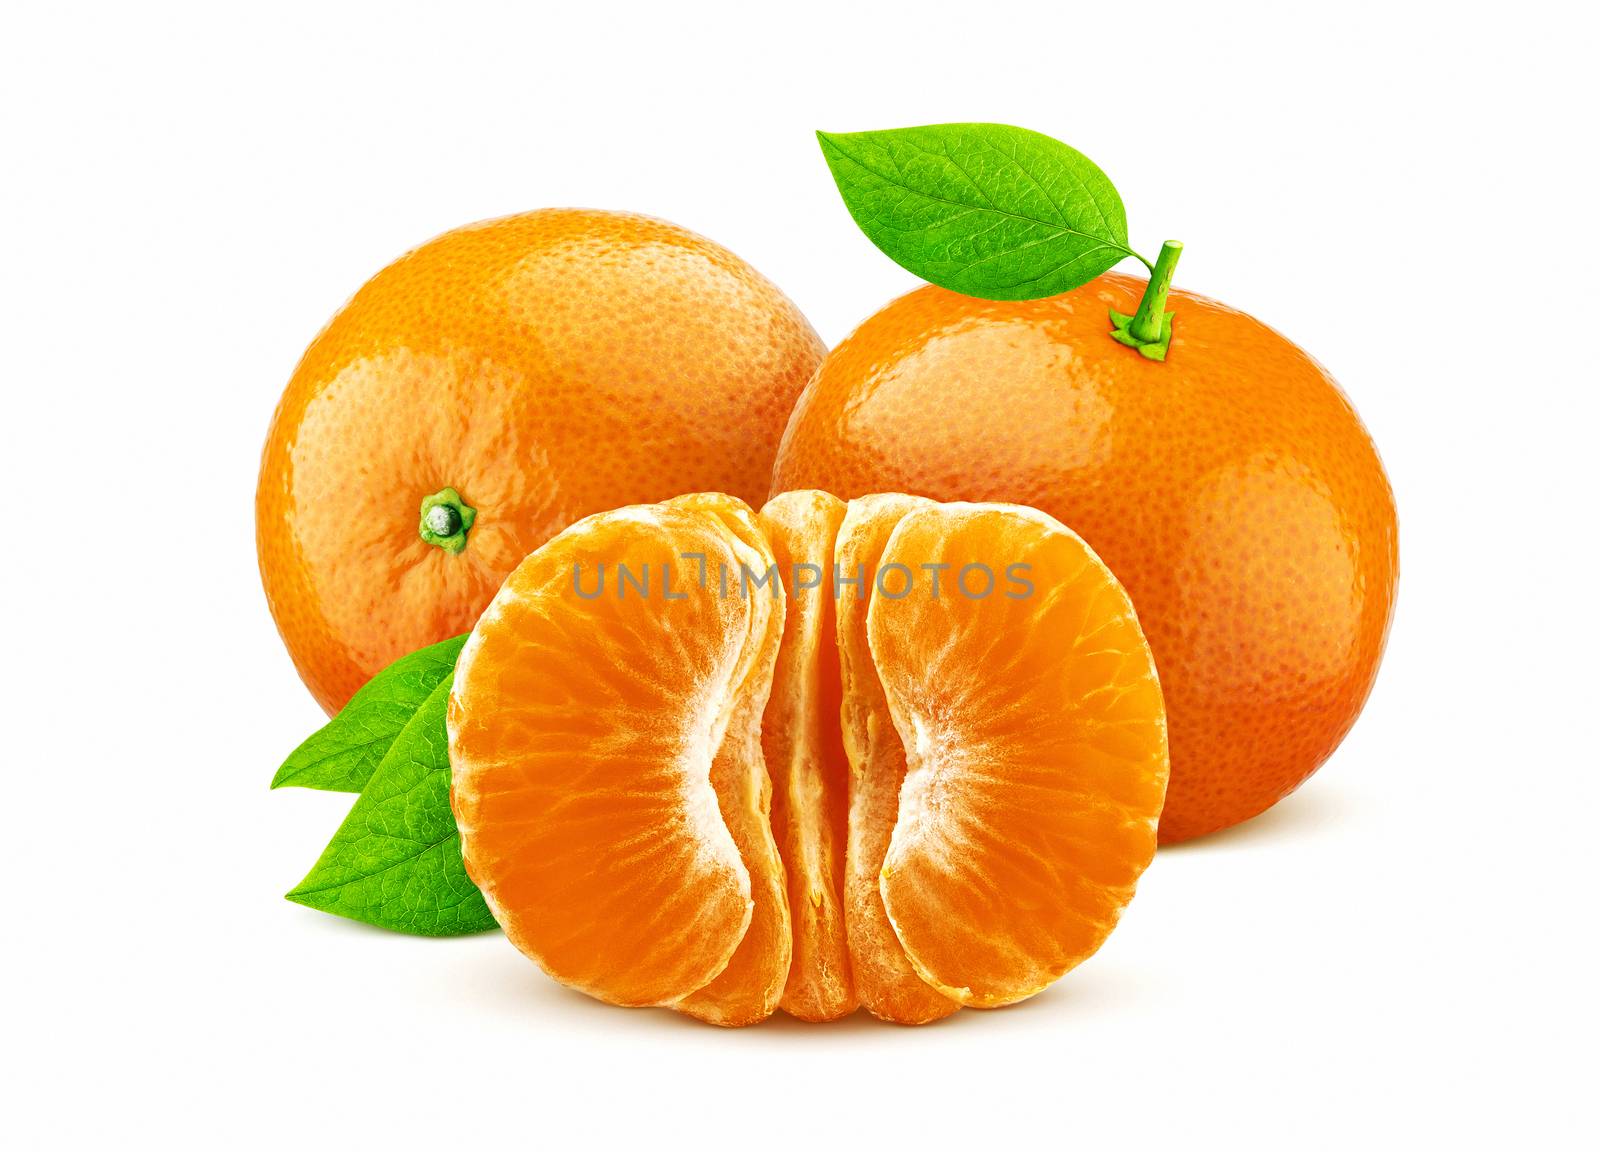 Mandarine or tangerine isolated on white background by xamtiw